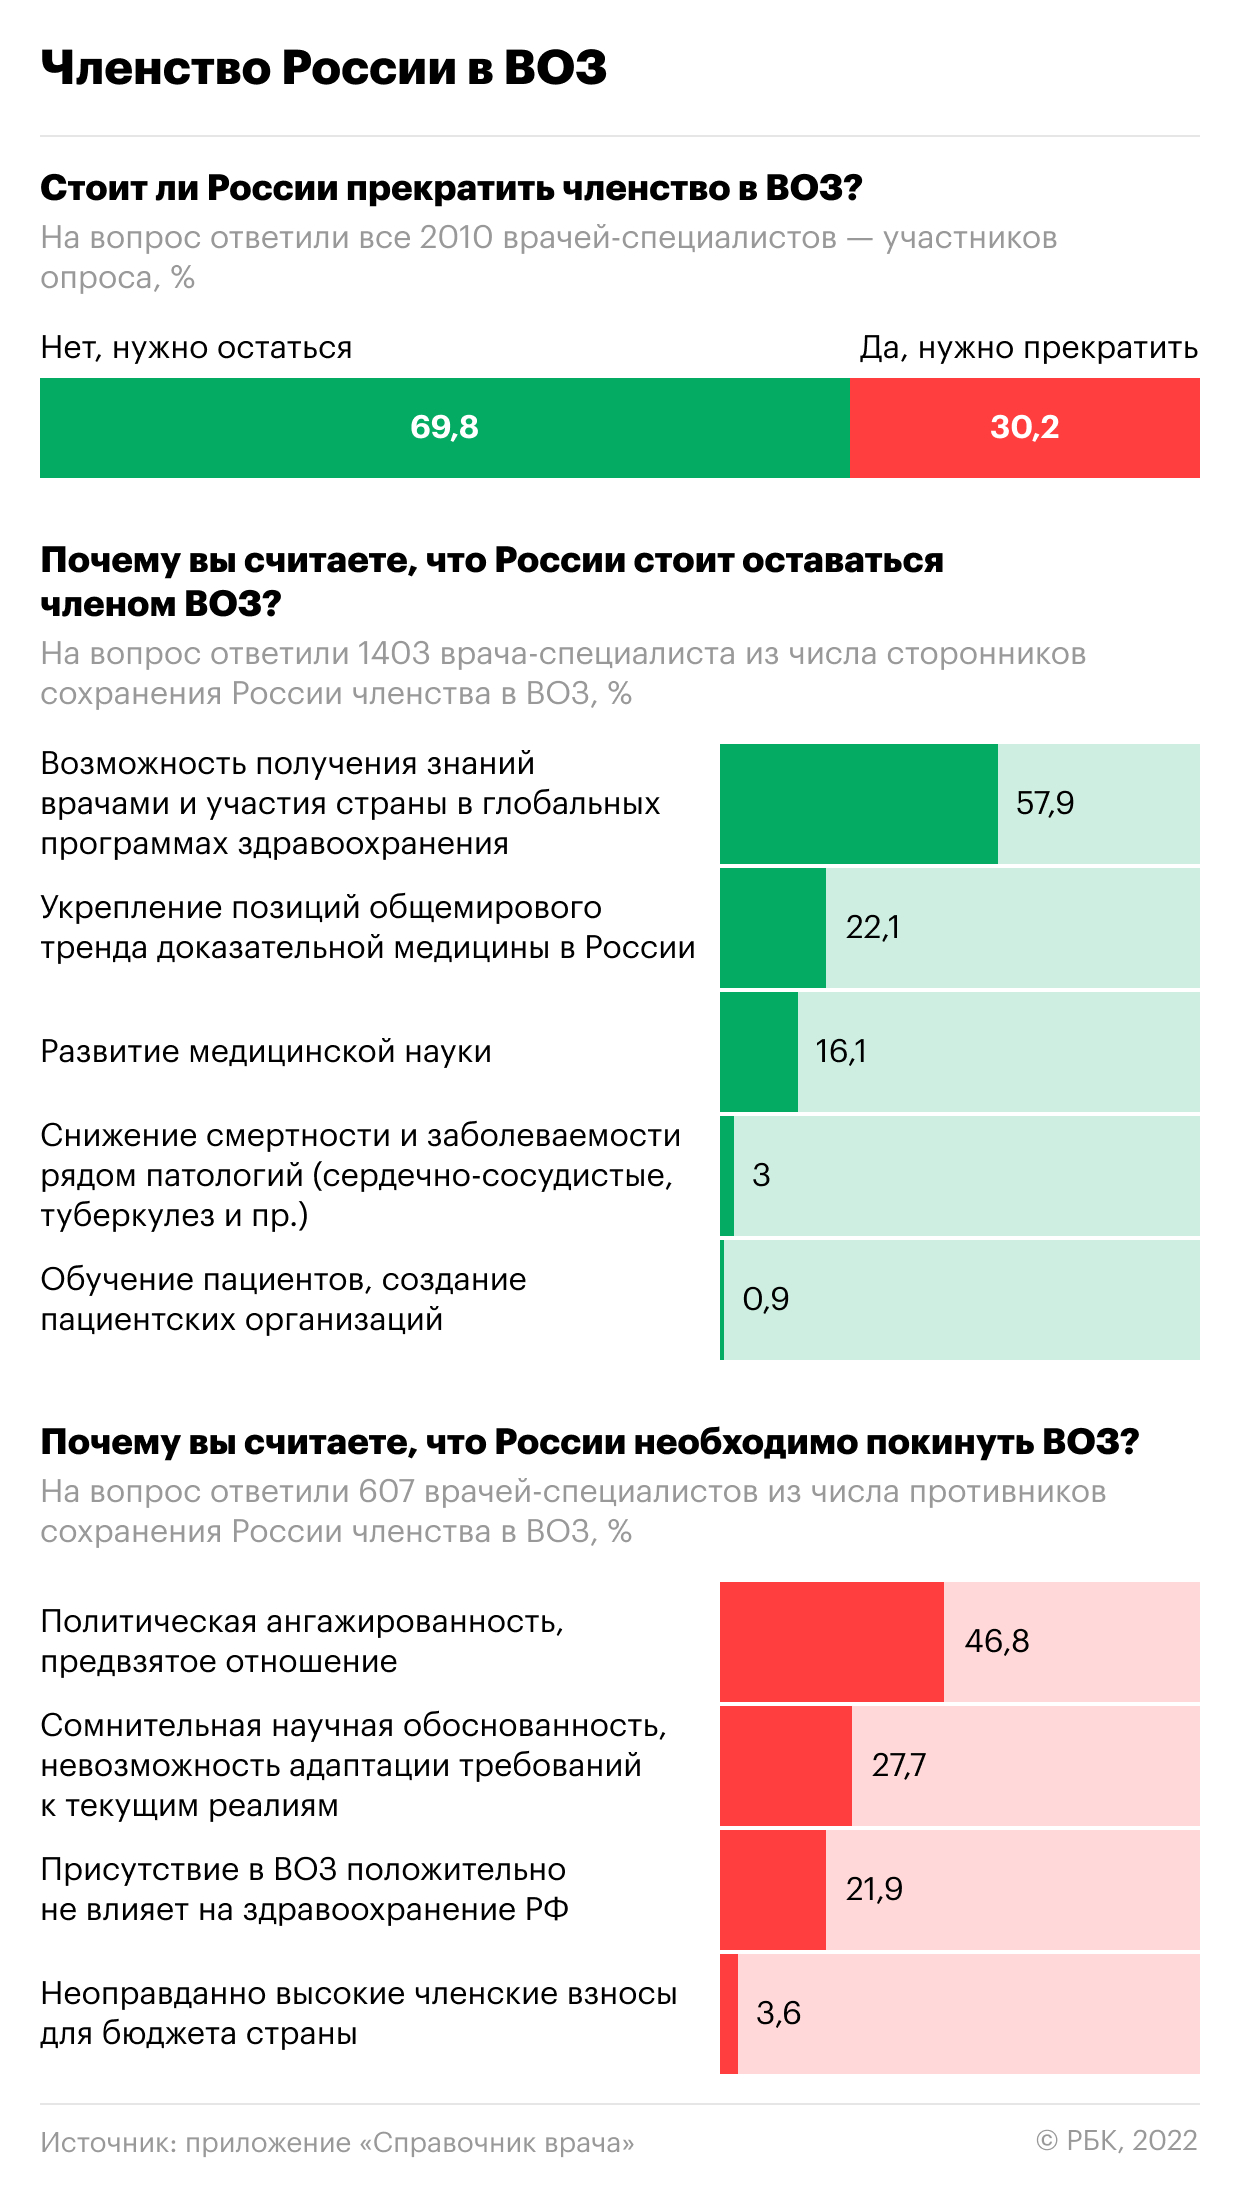 Как врачи в России относятся к выводам ВОЗ. Инфографика